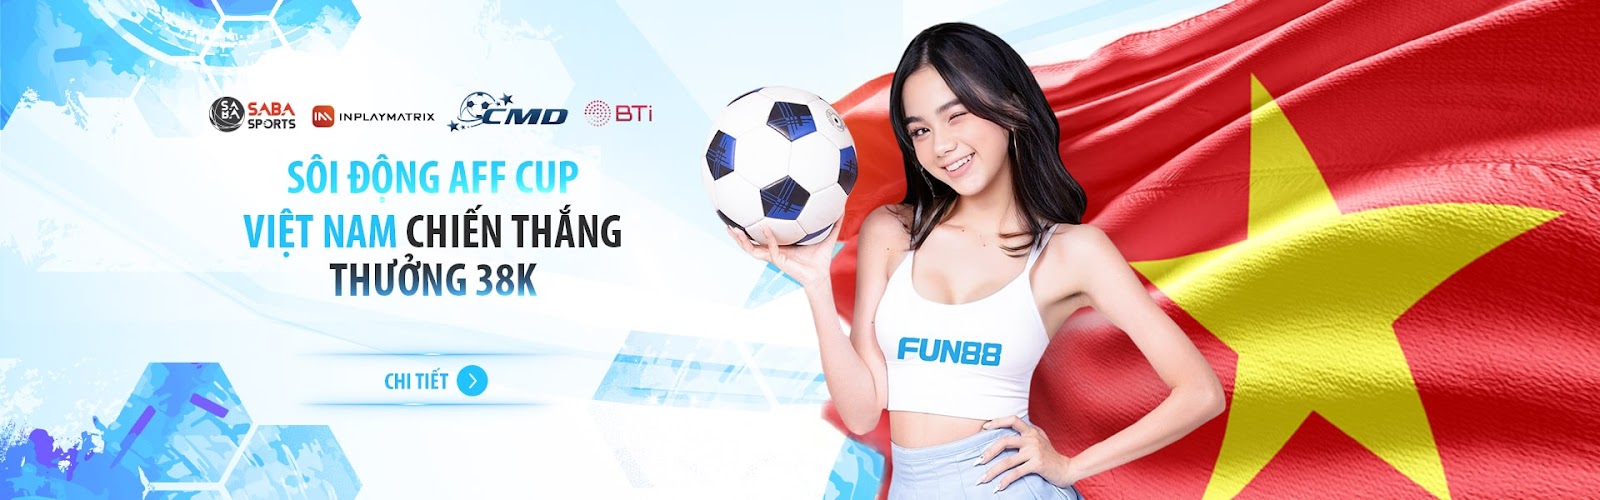 Fun88 thưởng nóng AFF CUP: Việt Nam thắng trận nhận ngay 38.000 cược miễn phí